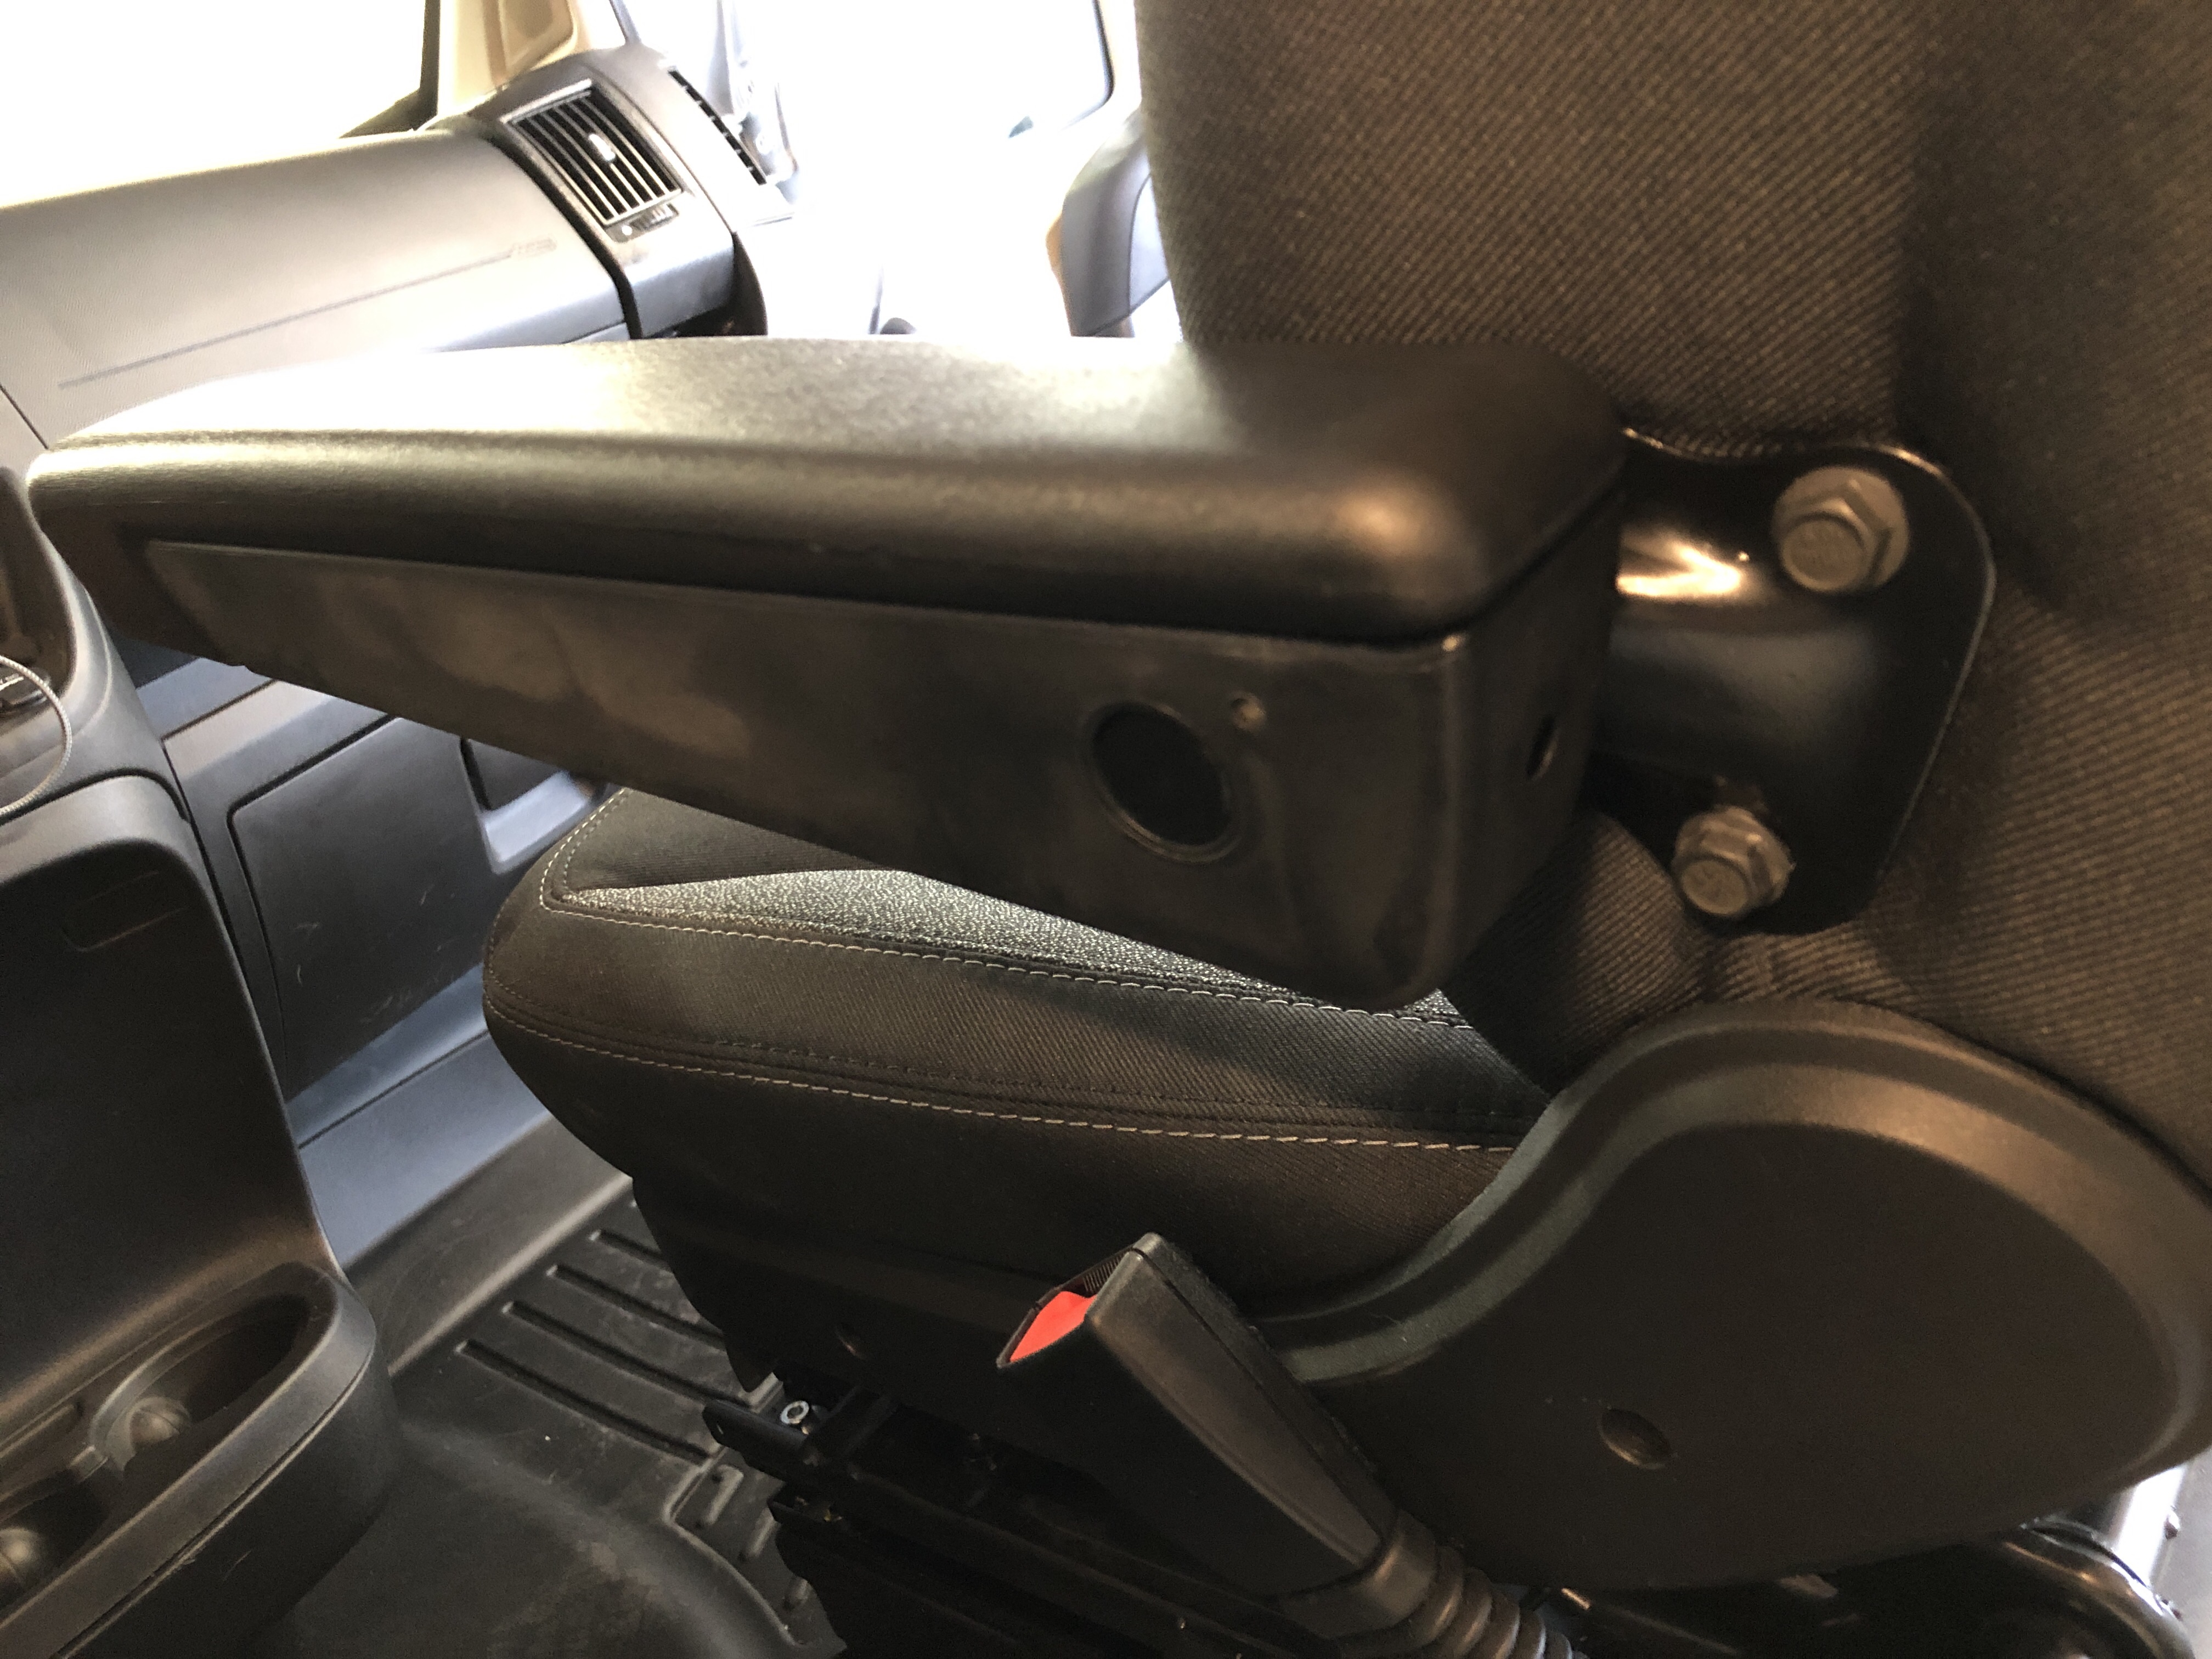 Passenger armrest